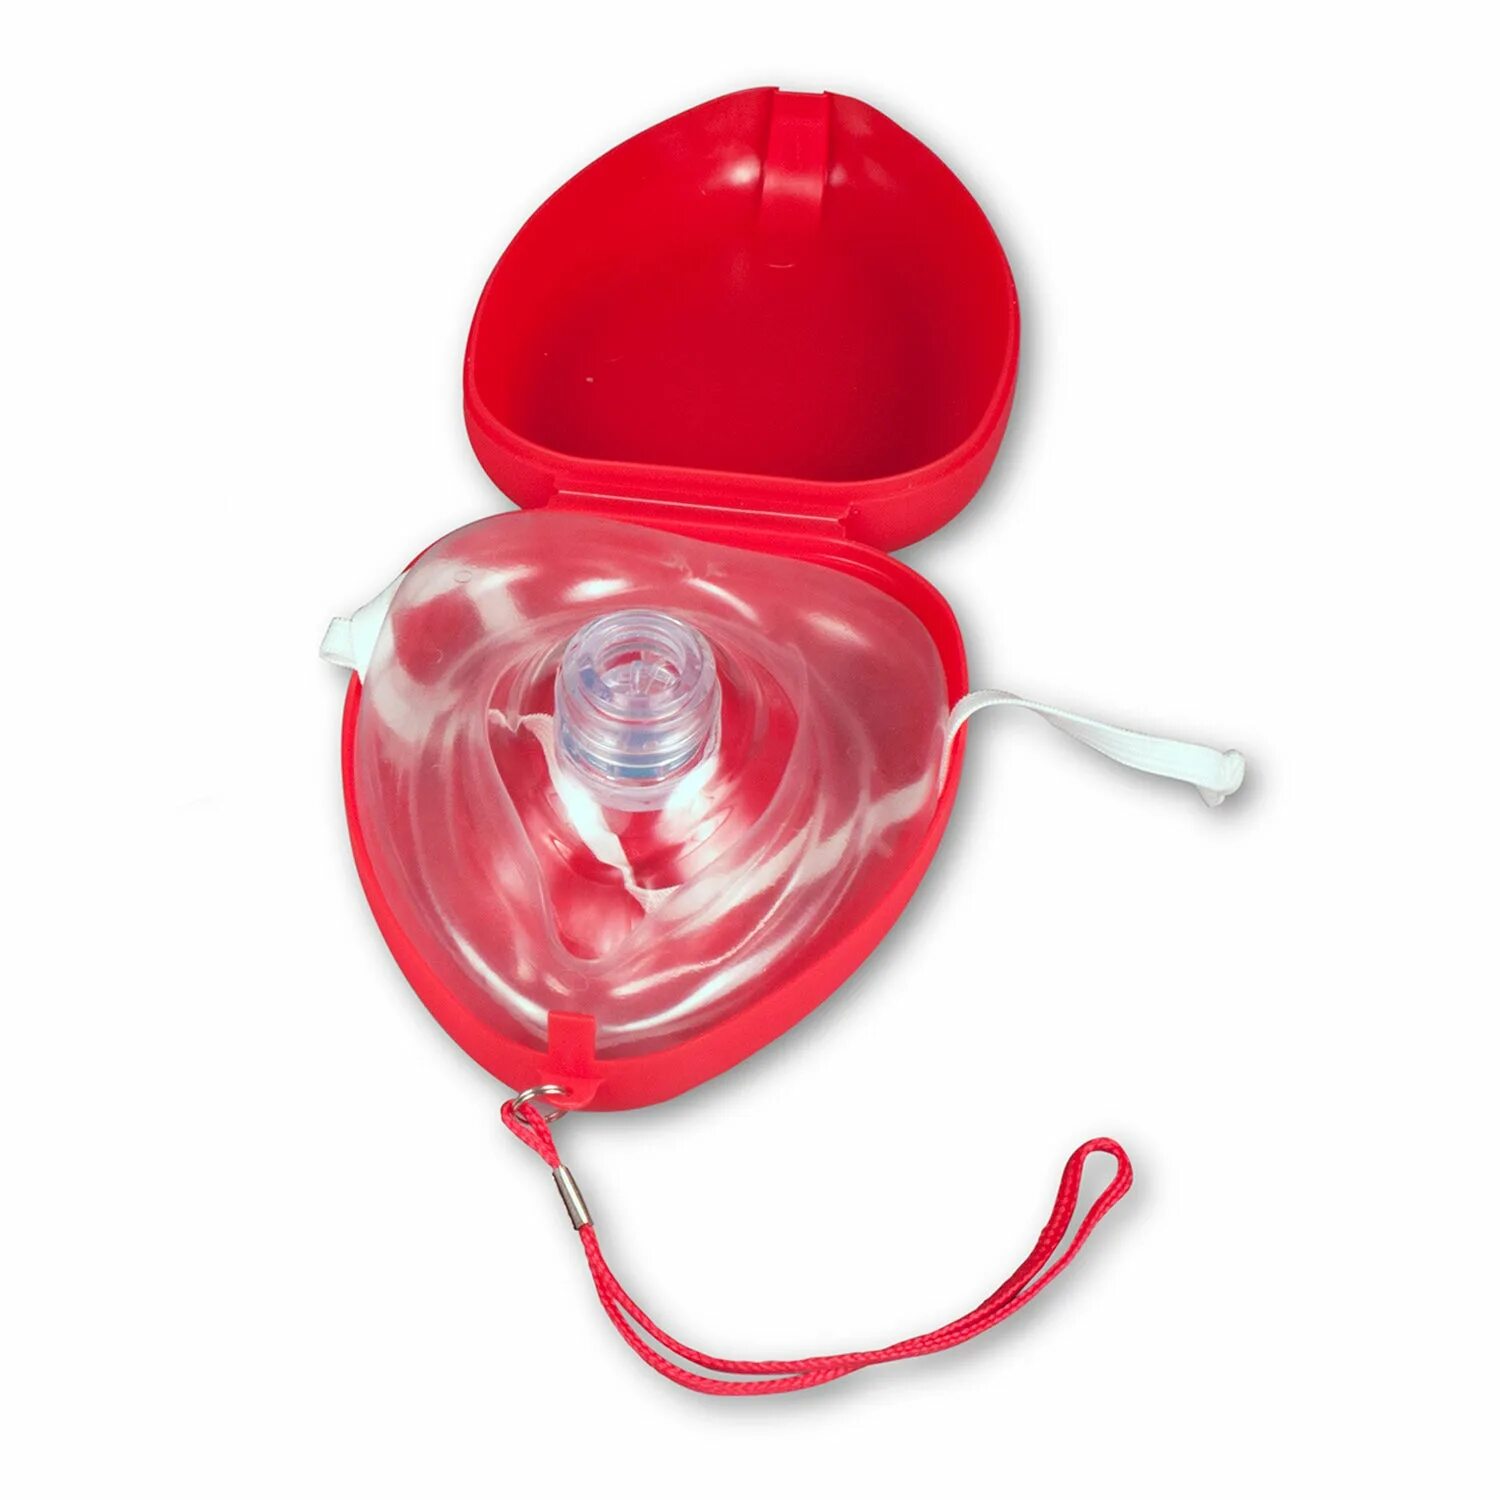 Карманная маска для ИВЛ "рот-маска" Laerdal. Маска для искусственного дыхания ADSAFE CPR Pocket. Маска реанимационная для СЛР. Карманная маска для реанимации с клапаном.